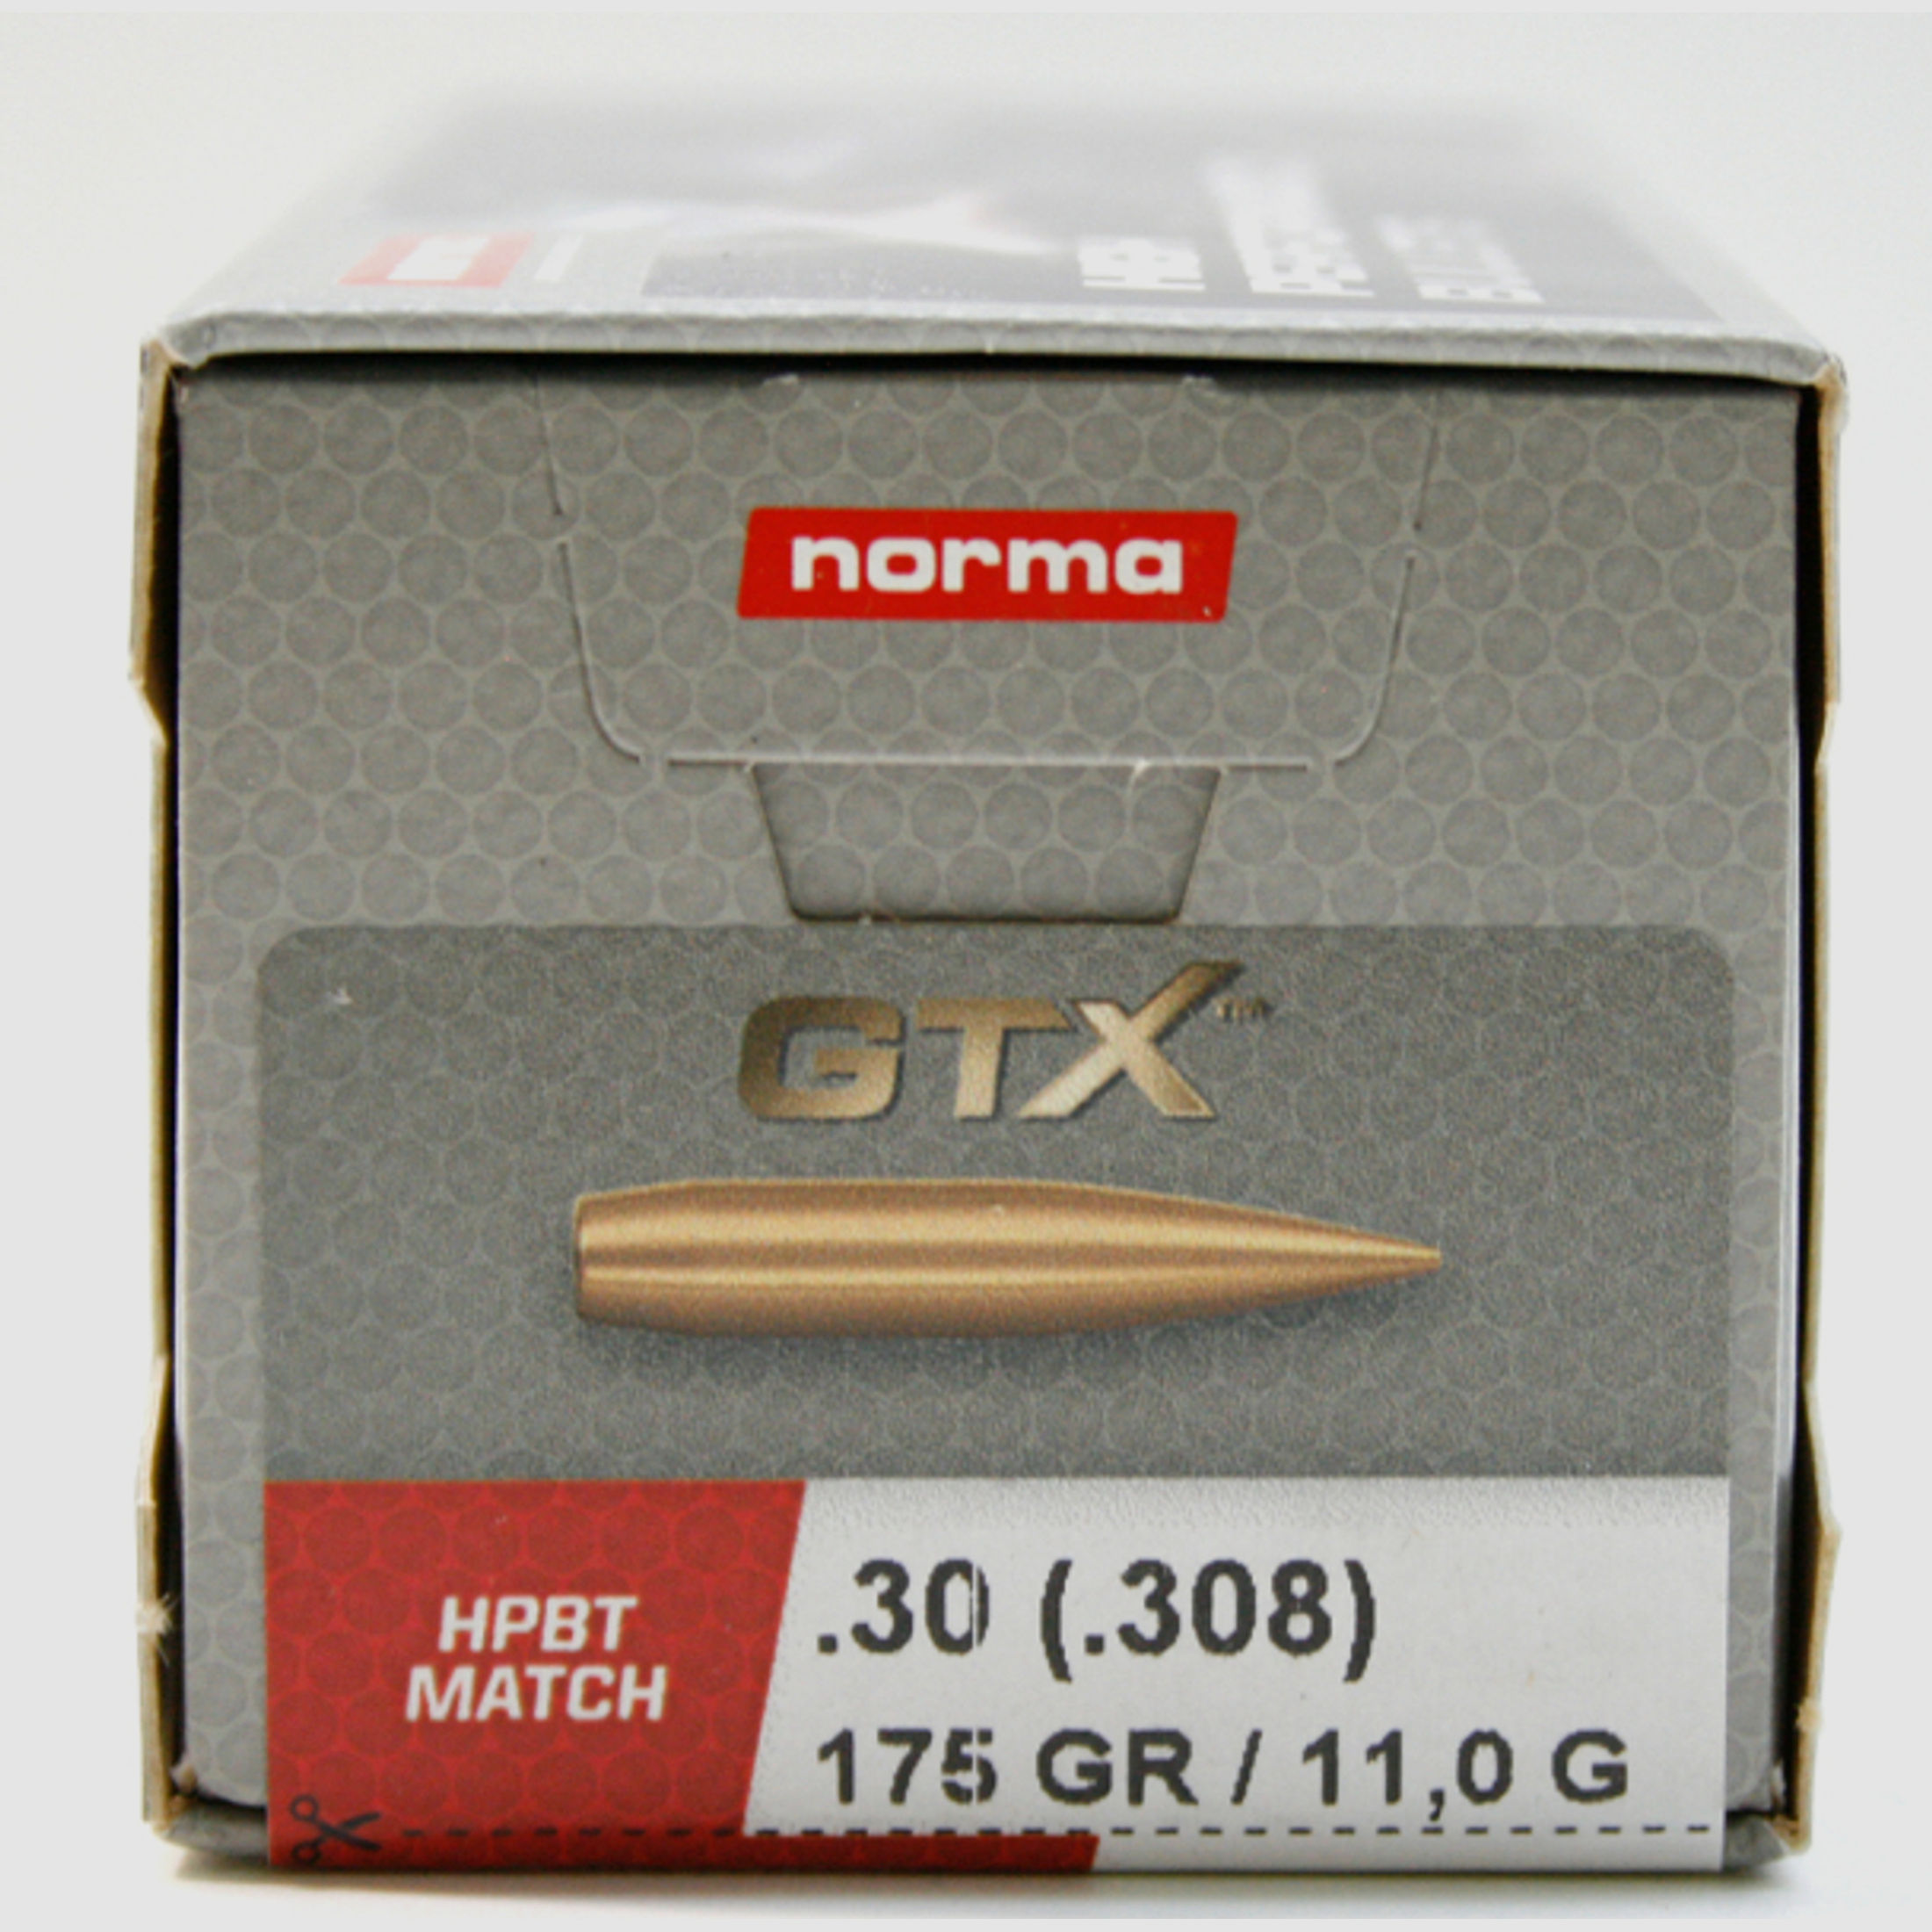 100 Stück NEUE NORMA HPBT Hohlspitz MATCH Geschosse GTX - CAL 30 .308 175gr 11,0g HPBT GOLDEN TARGET